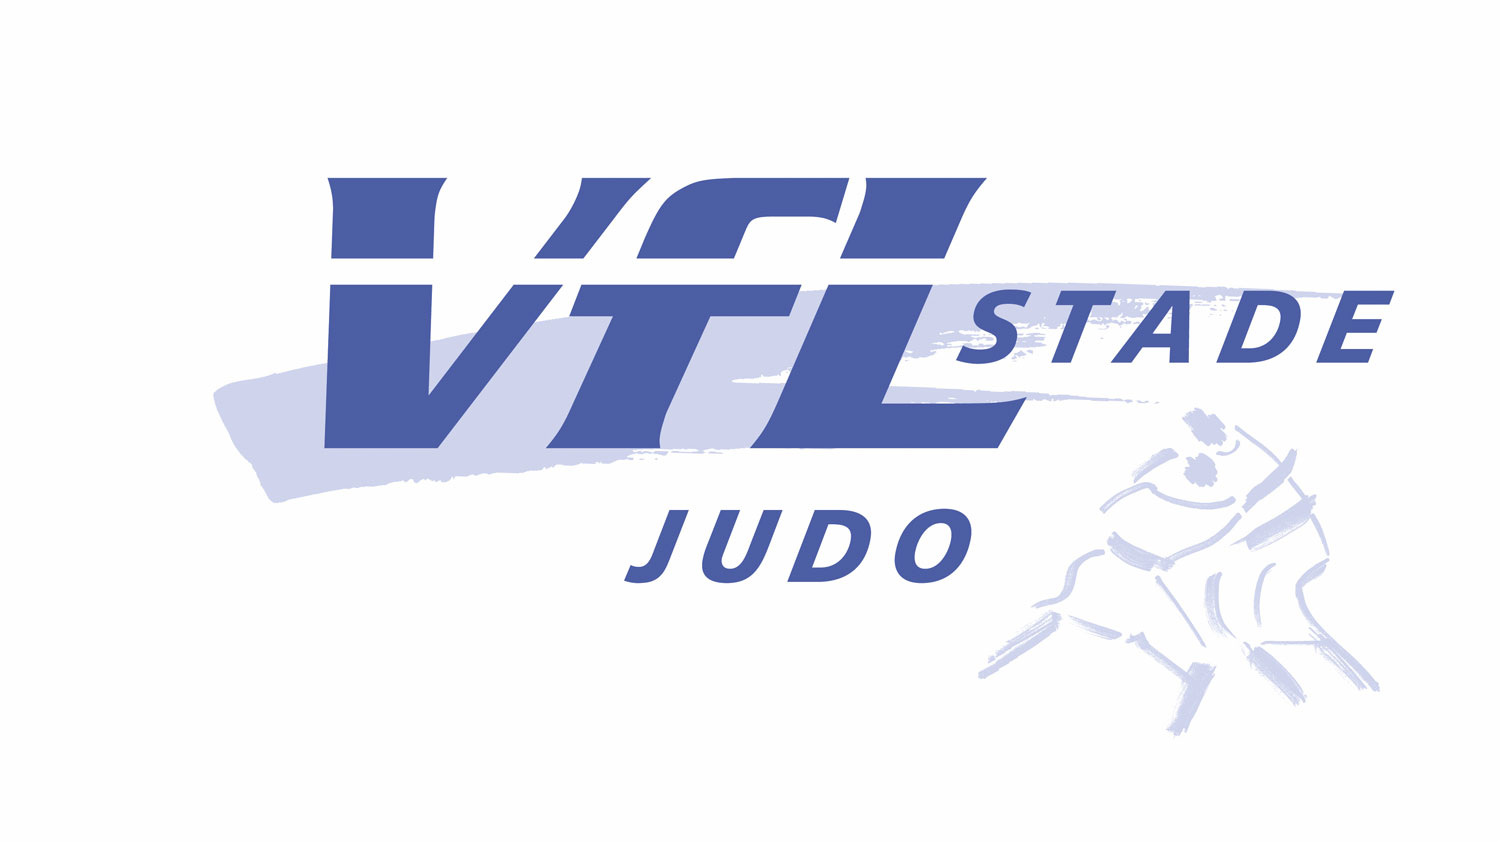 Abteilungslogos_VfL/Judo_logo.jpg